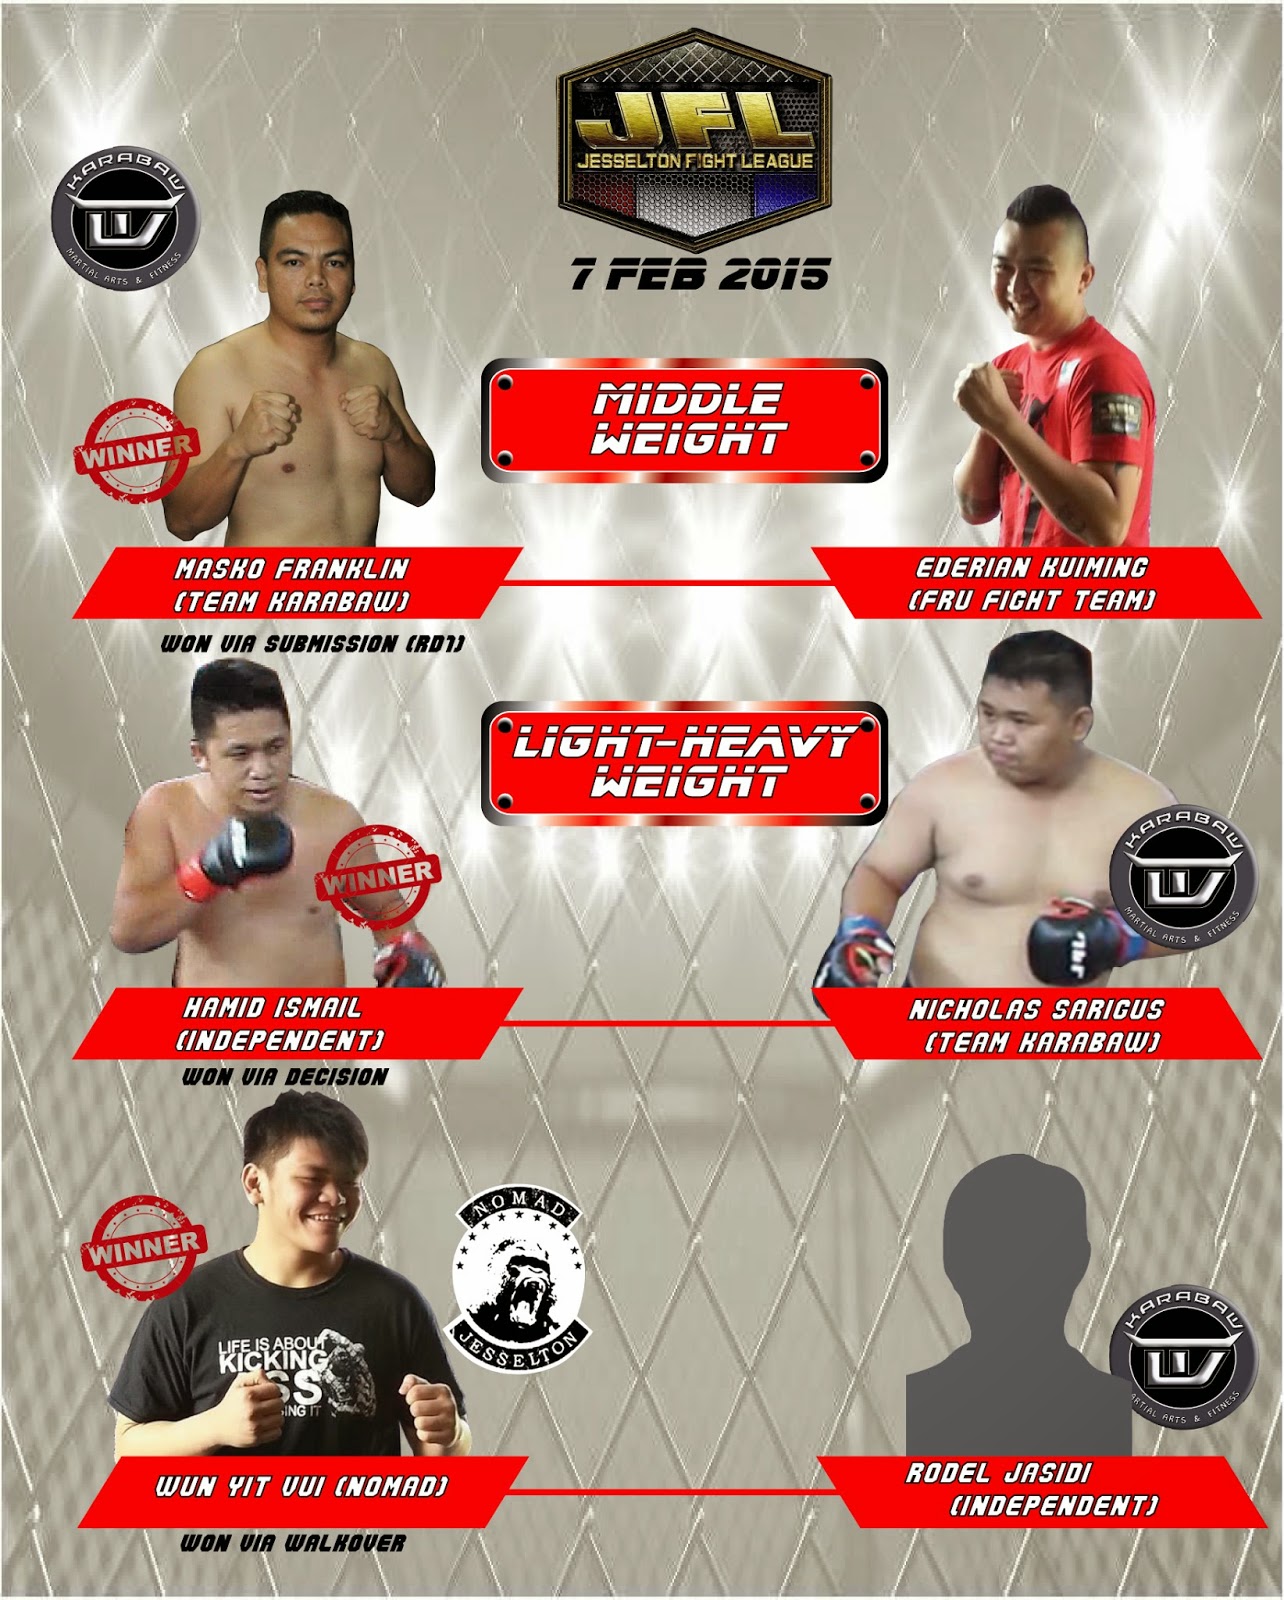 Warriors Of Borneo Blog Jfl 15 The Ladder Match Middleweight Light Heavyweight Heavyweight Results